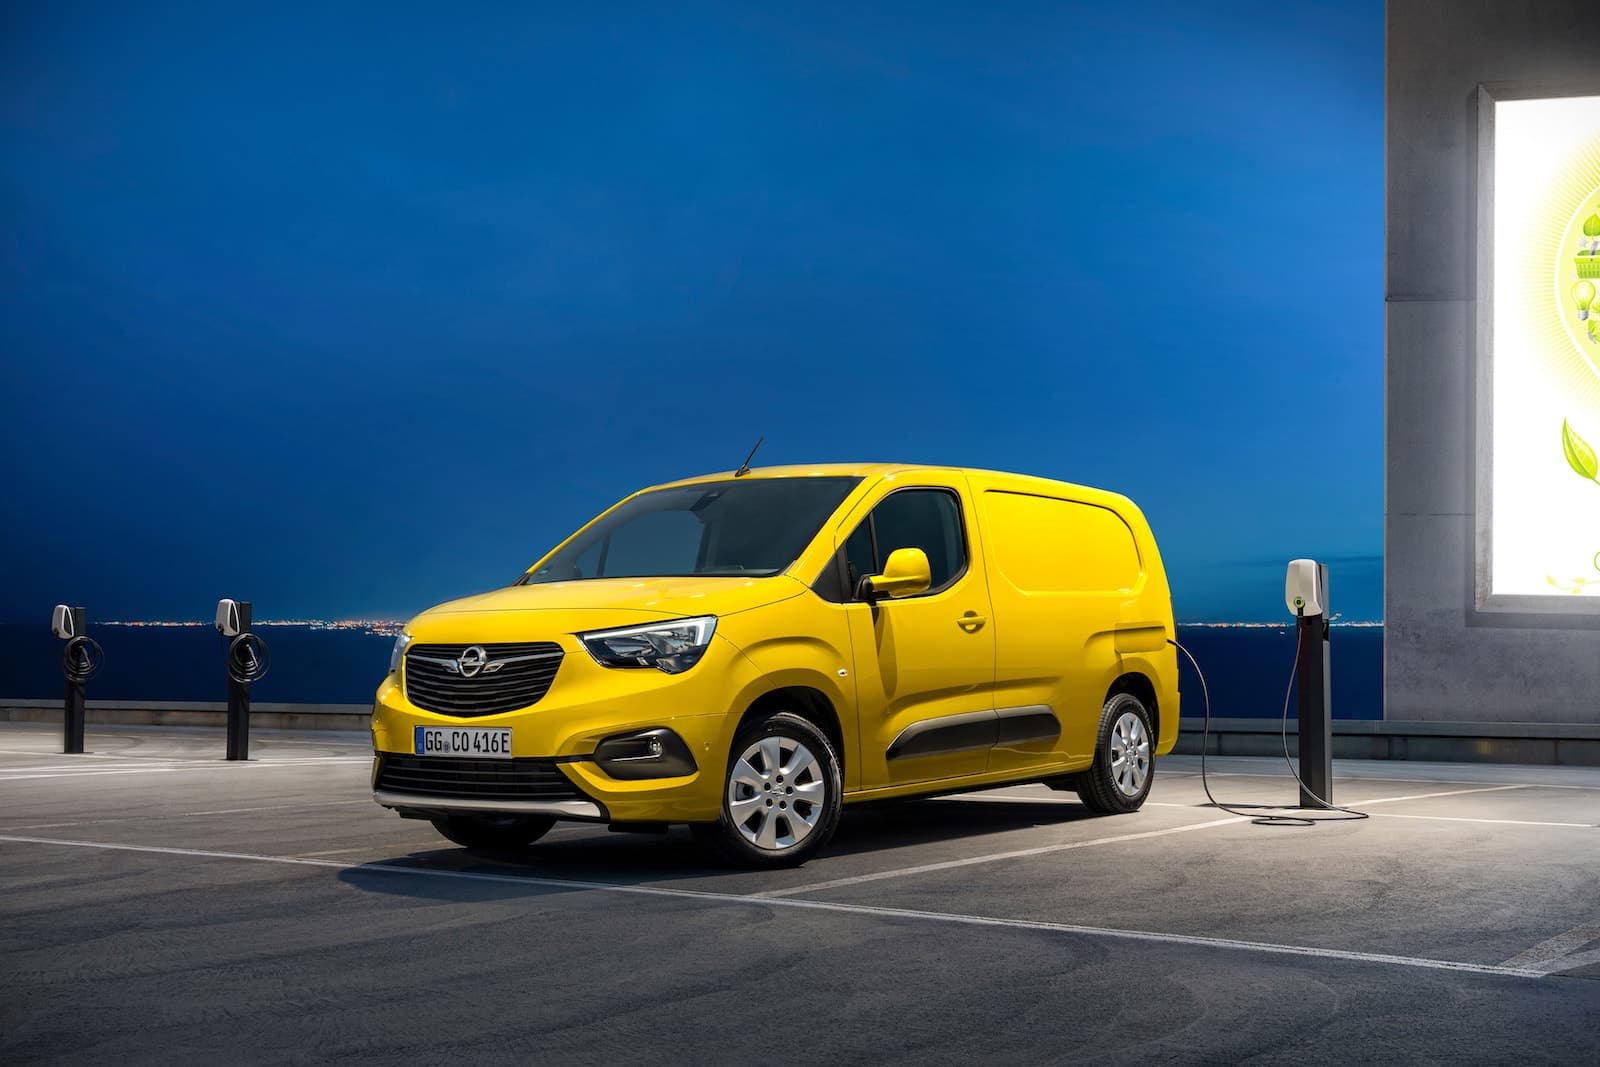 Az Opel Combo-e Cargo modellre 8 év vagy 160 000 km garanciát ad a gyártó.